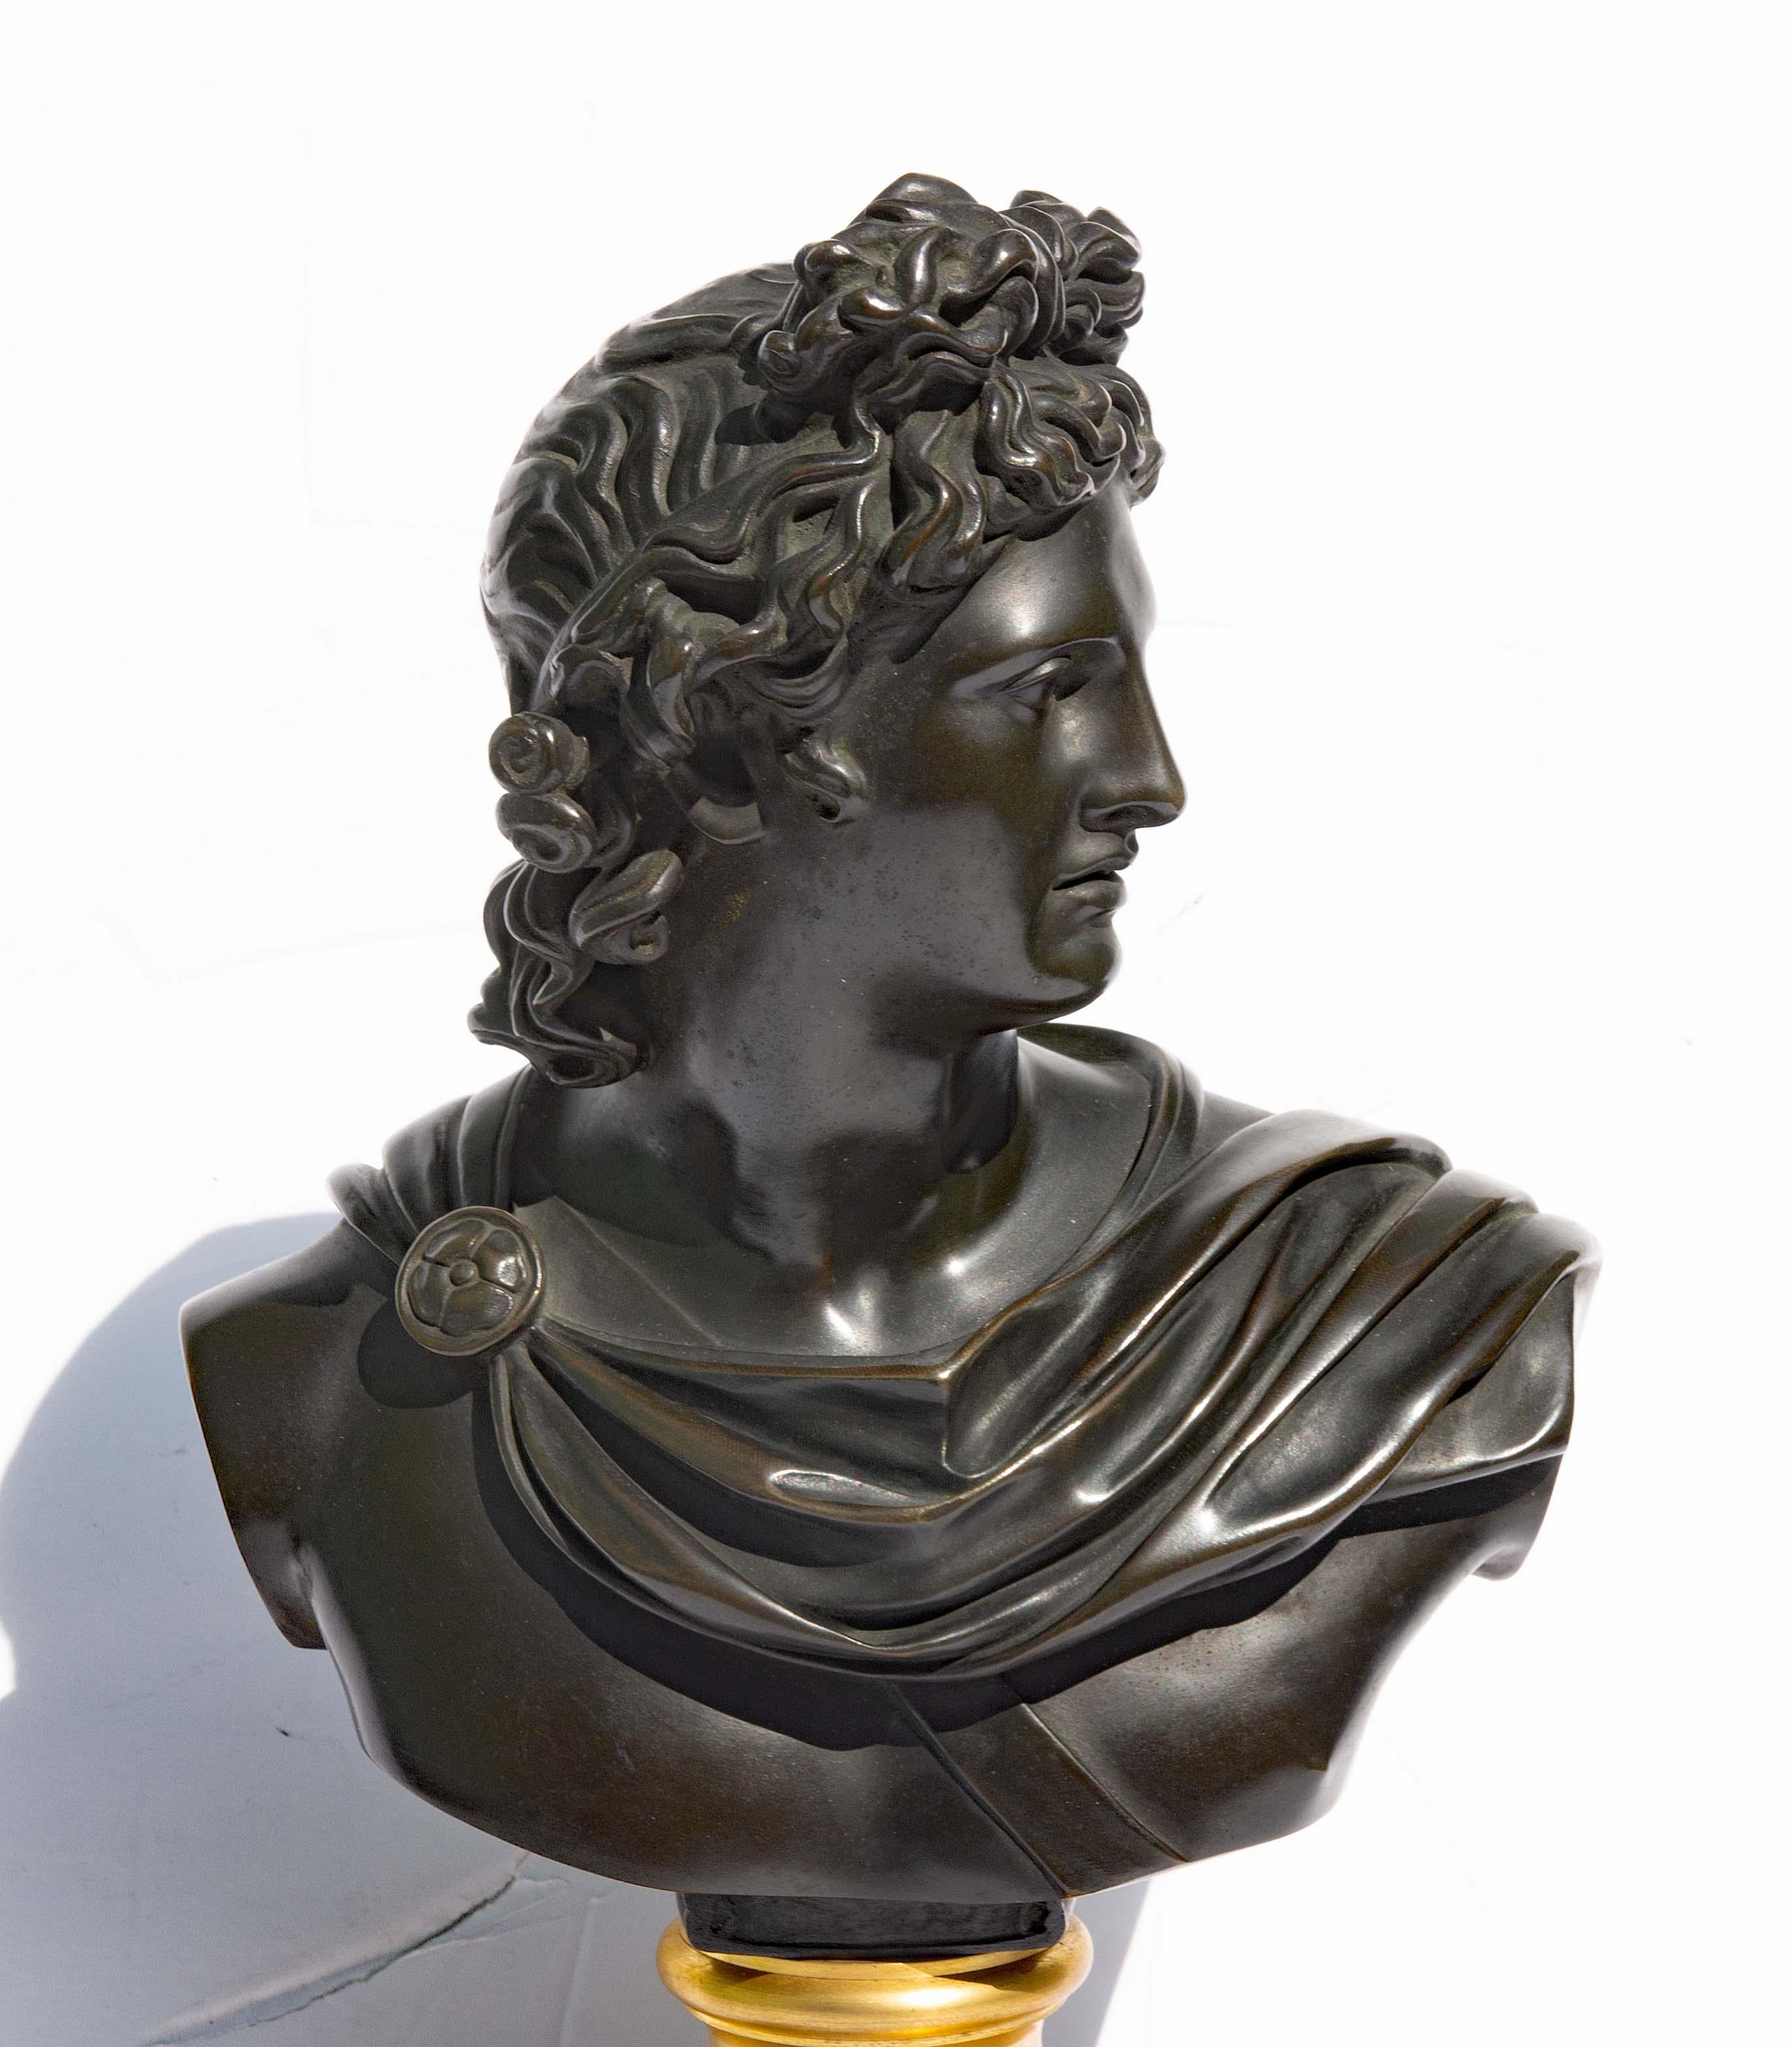 Superbe buste du dieu Apollo en bronze et bronze doré du 19e siècle, Belvedere, vers 1850. Ce magnifique buste du Grand Tour est une merveille de beauté et d'élégance raffinées. Il est réalisé en bronze richement patiné et monté sur un socle en